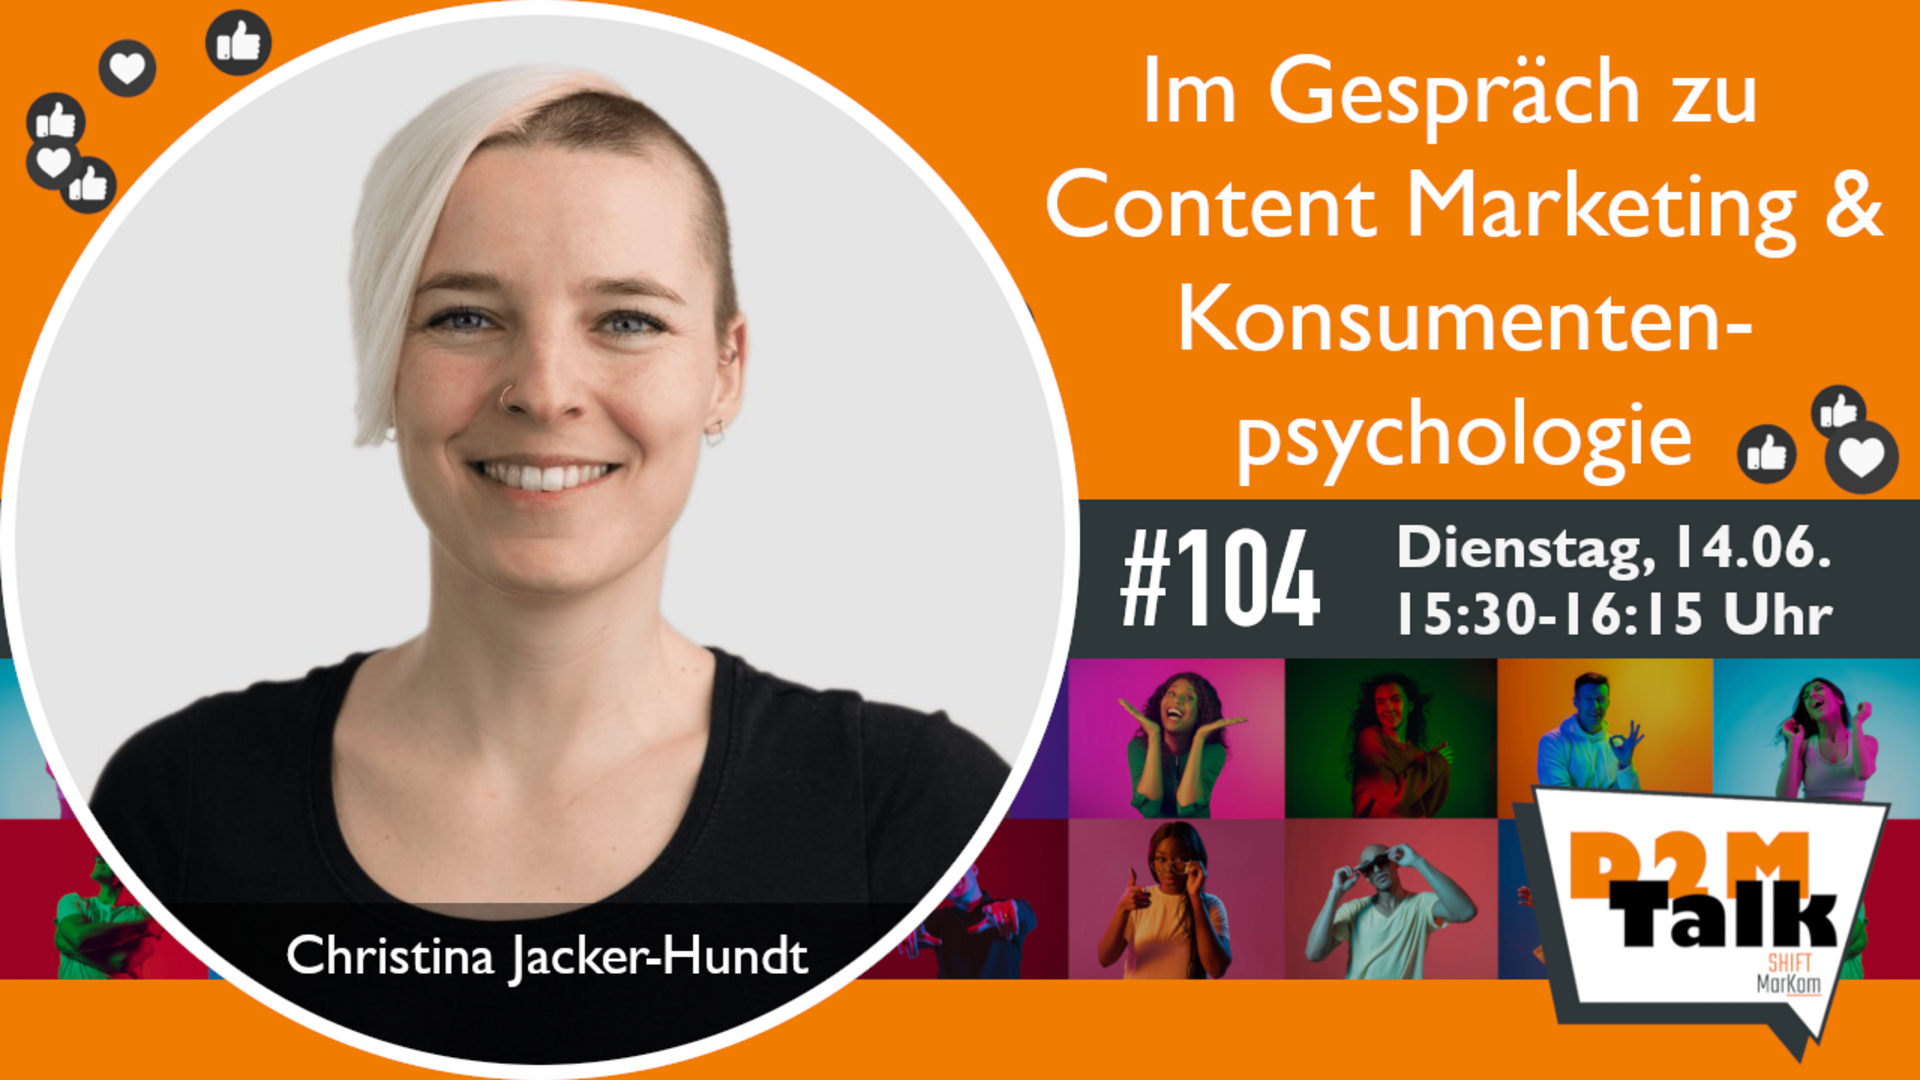 Im Gespräch mit Christina Jacker-Hundt zu Content Marketing & Konsumentenpsychologie